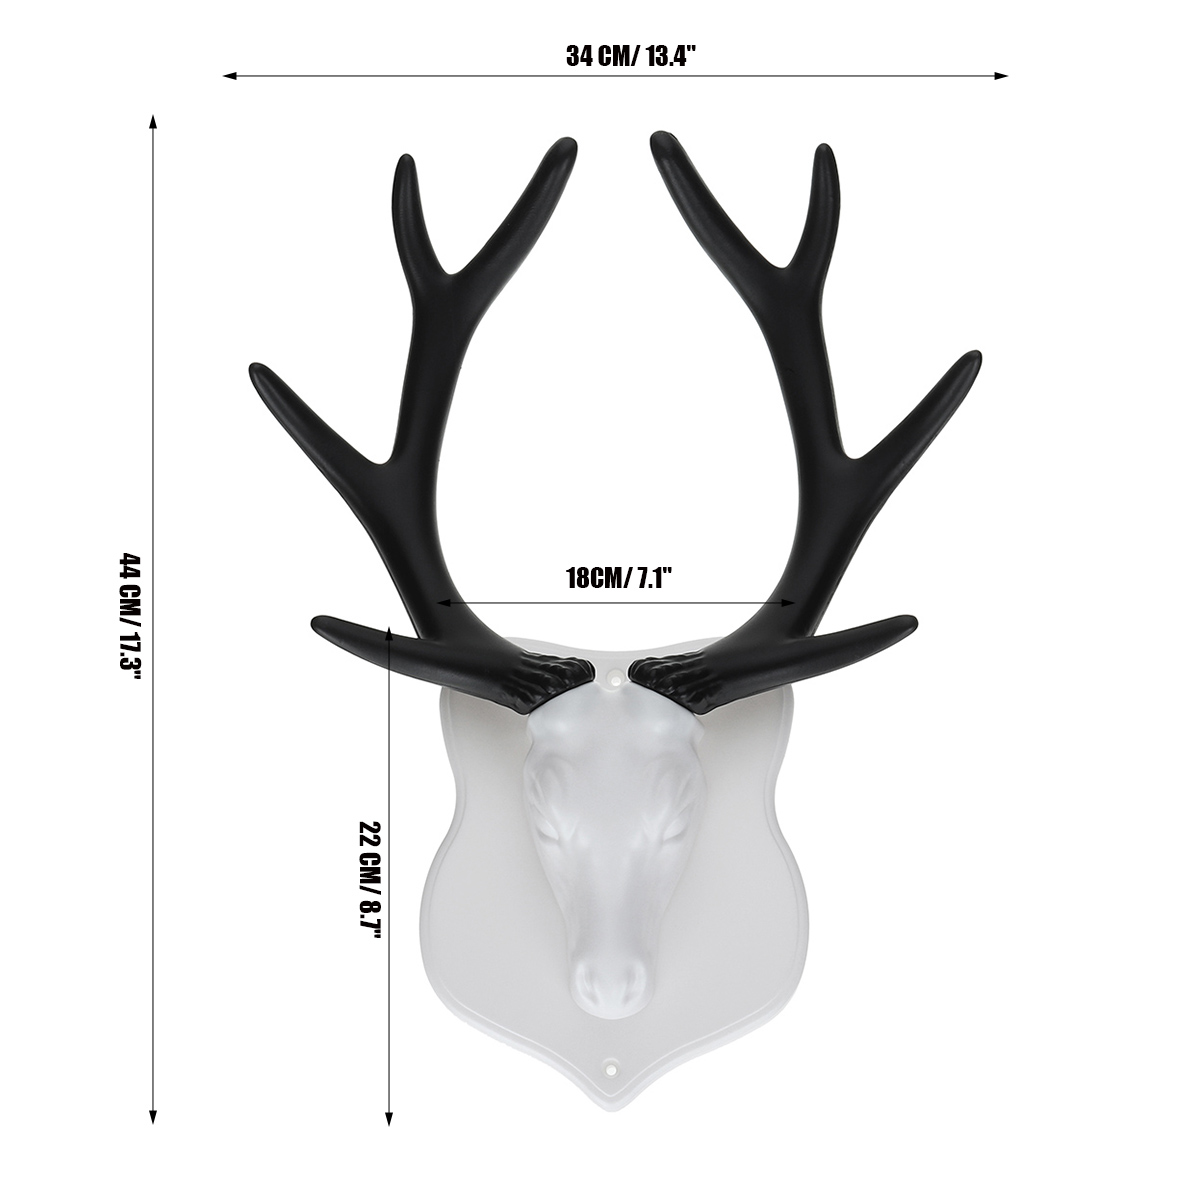 2-Kinds-Vintage-Deer-Antler-Hook-Rack-Home-Decorative-Wall-Hat-Coat-Hanging-Cloth-Hanger-1373808